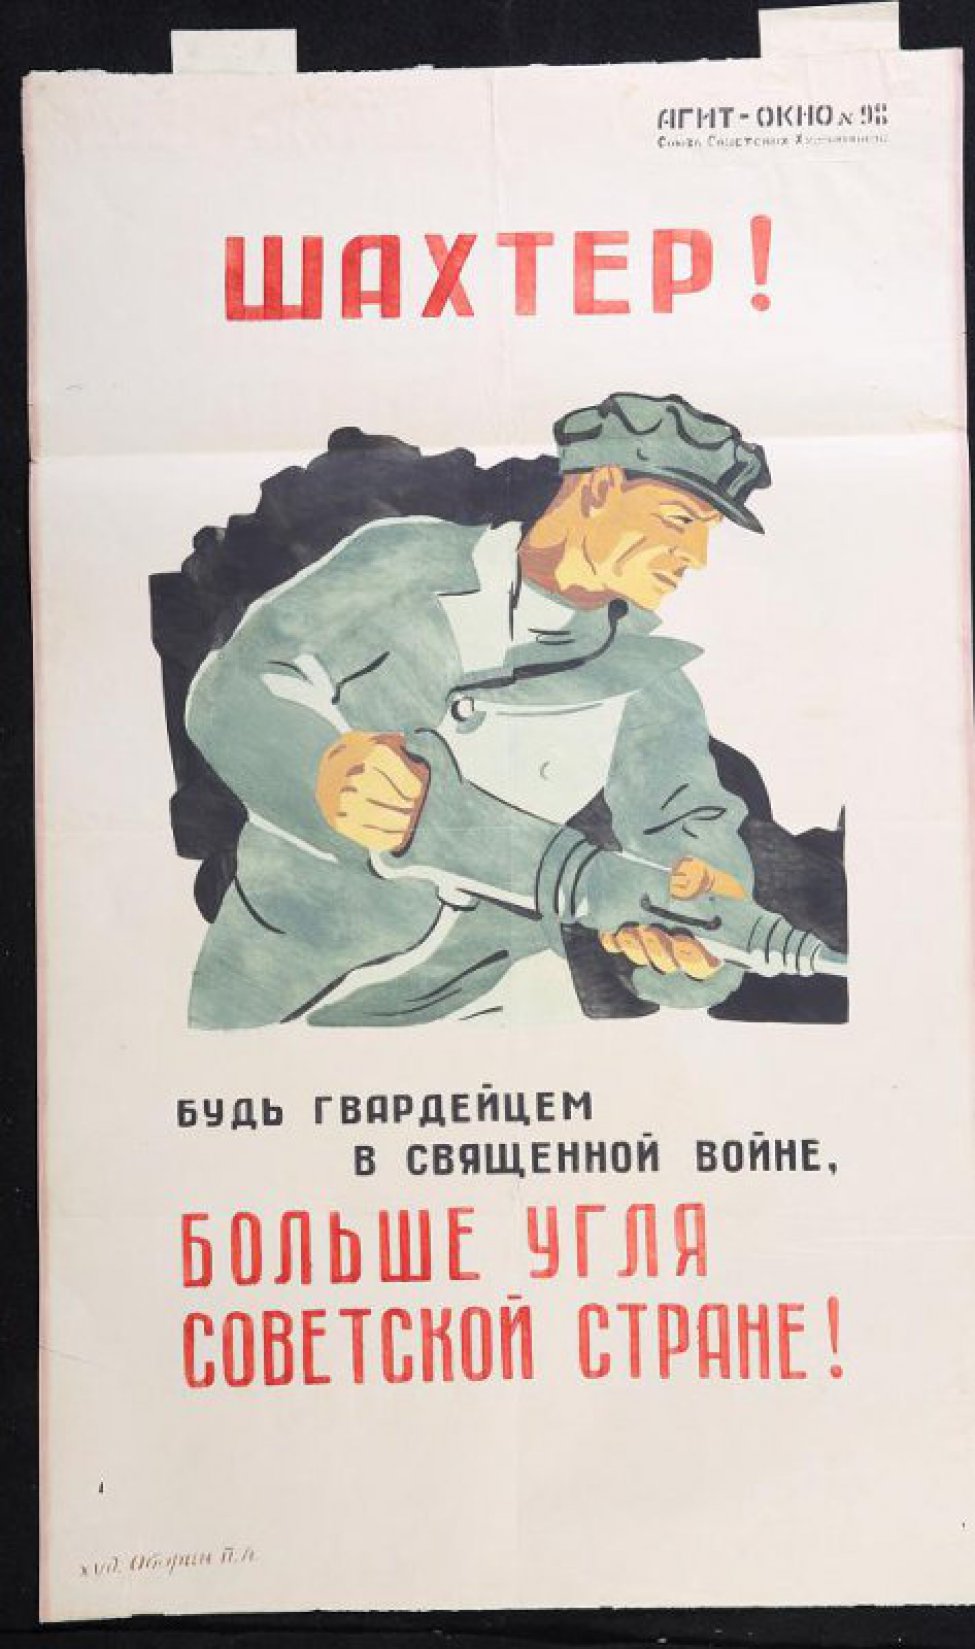 Изображено: шахтер с отбойным молотком в шахте, текст: "Будь гвардейцем в священной войне, больше угля советской стране!"